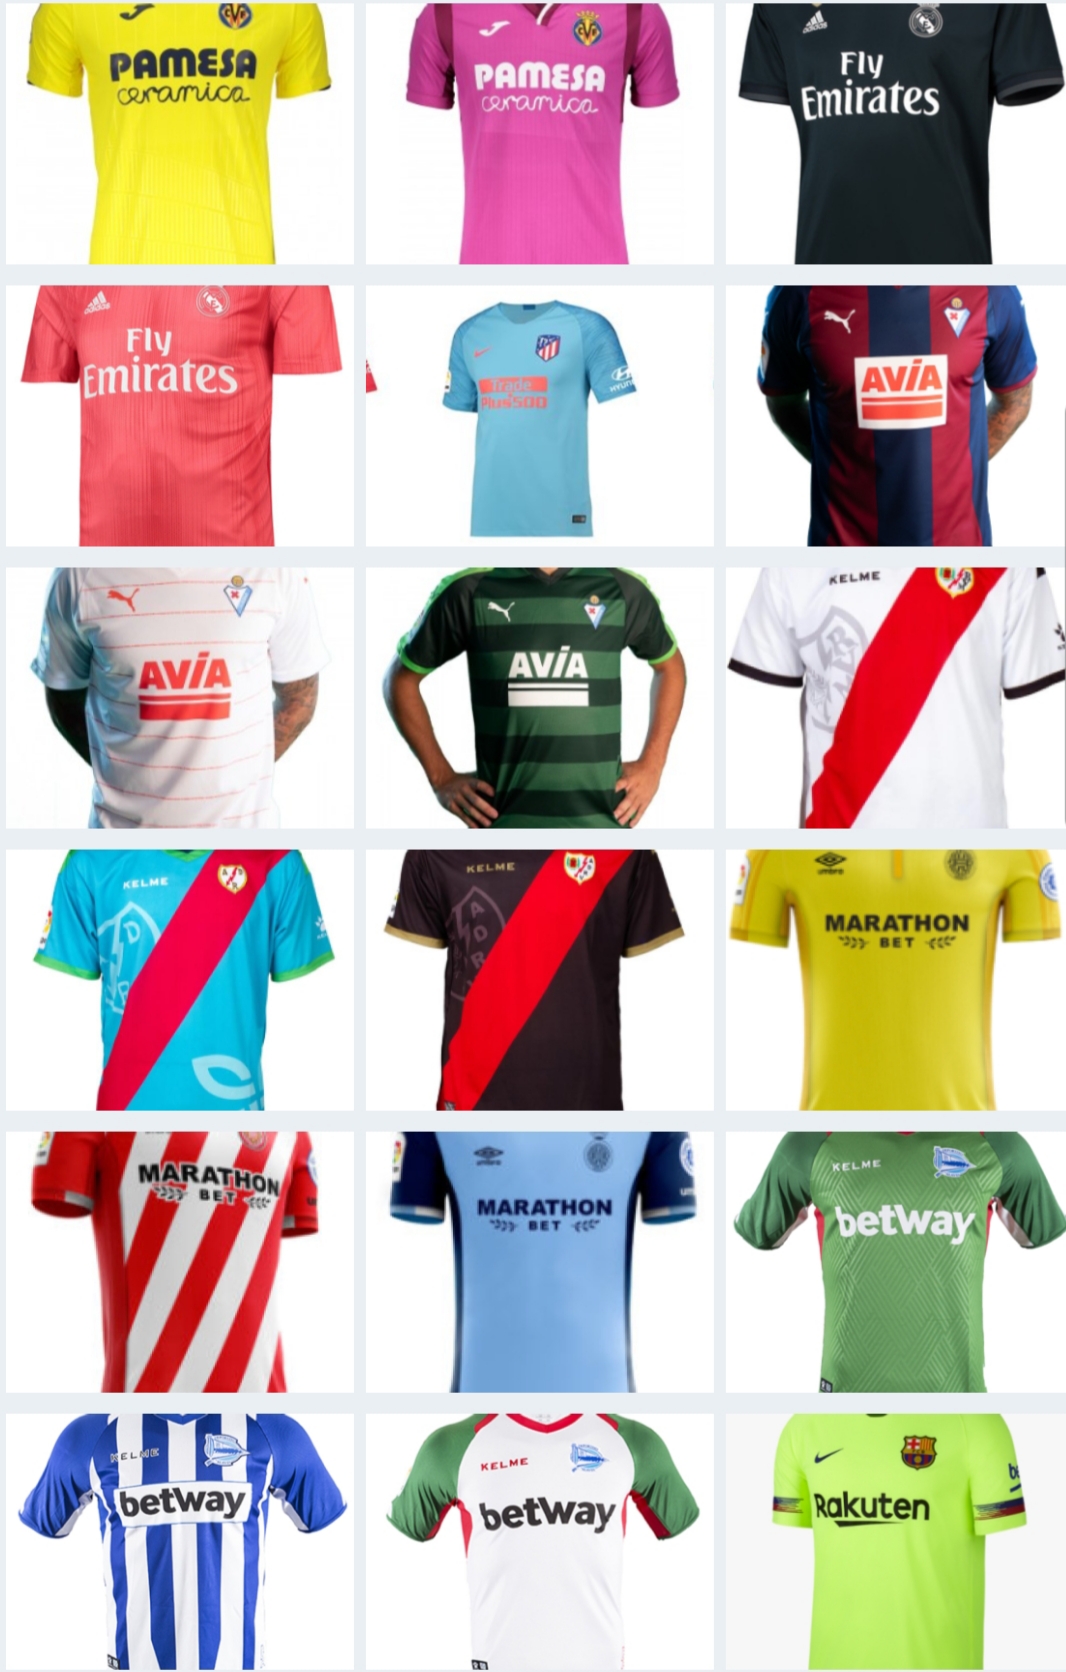 Comparativa de precios de las camisetas de la liga – Abrazo de gol